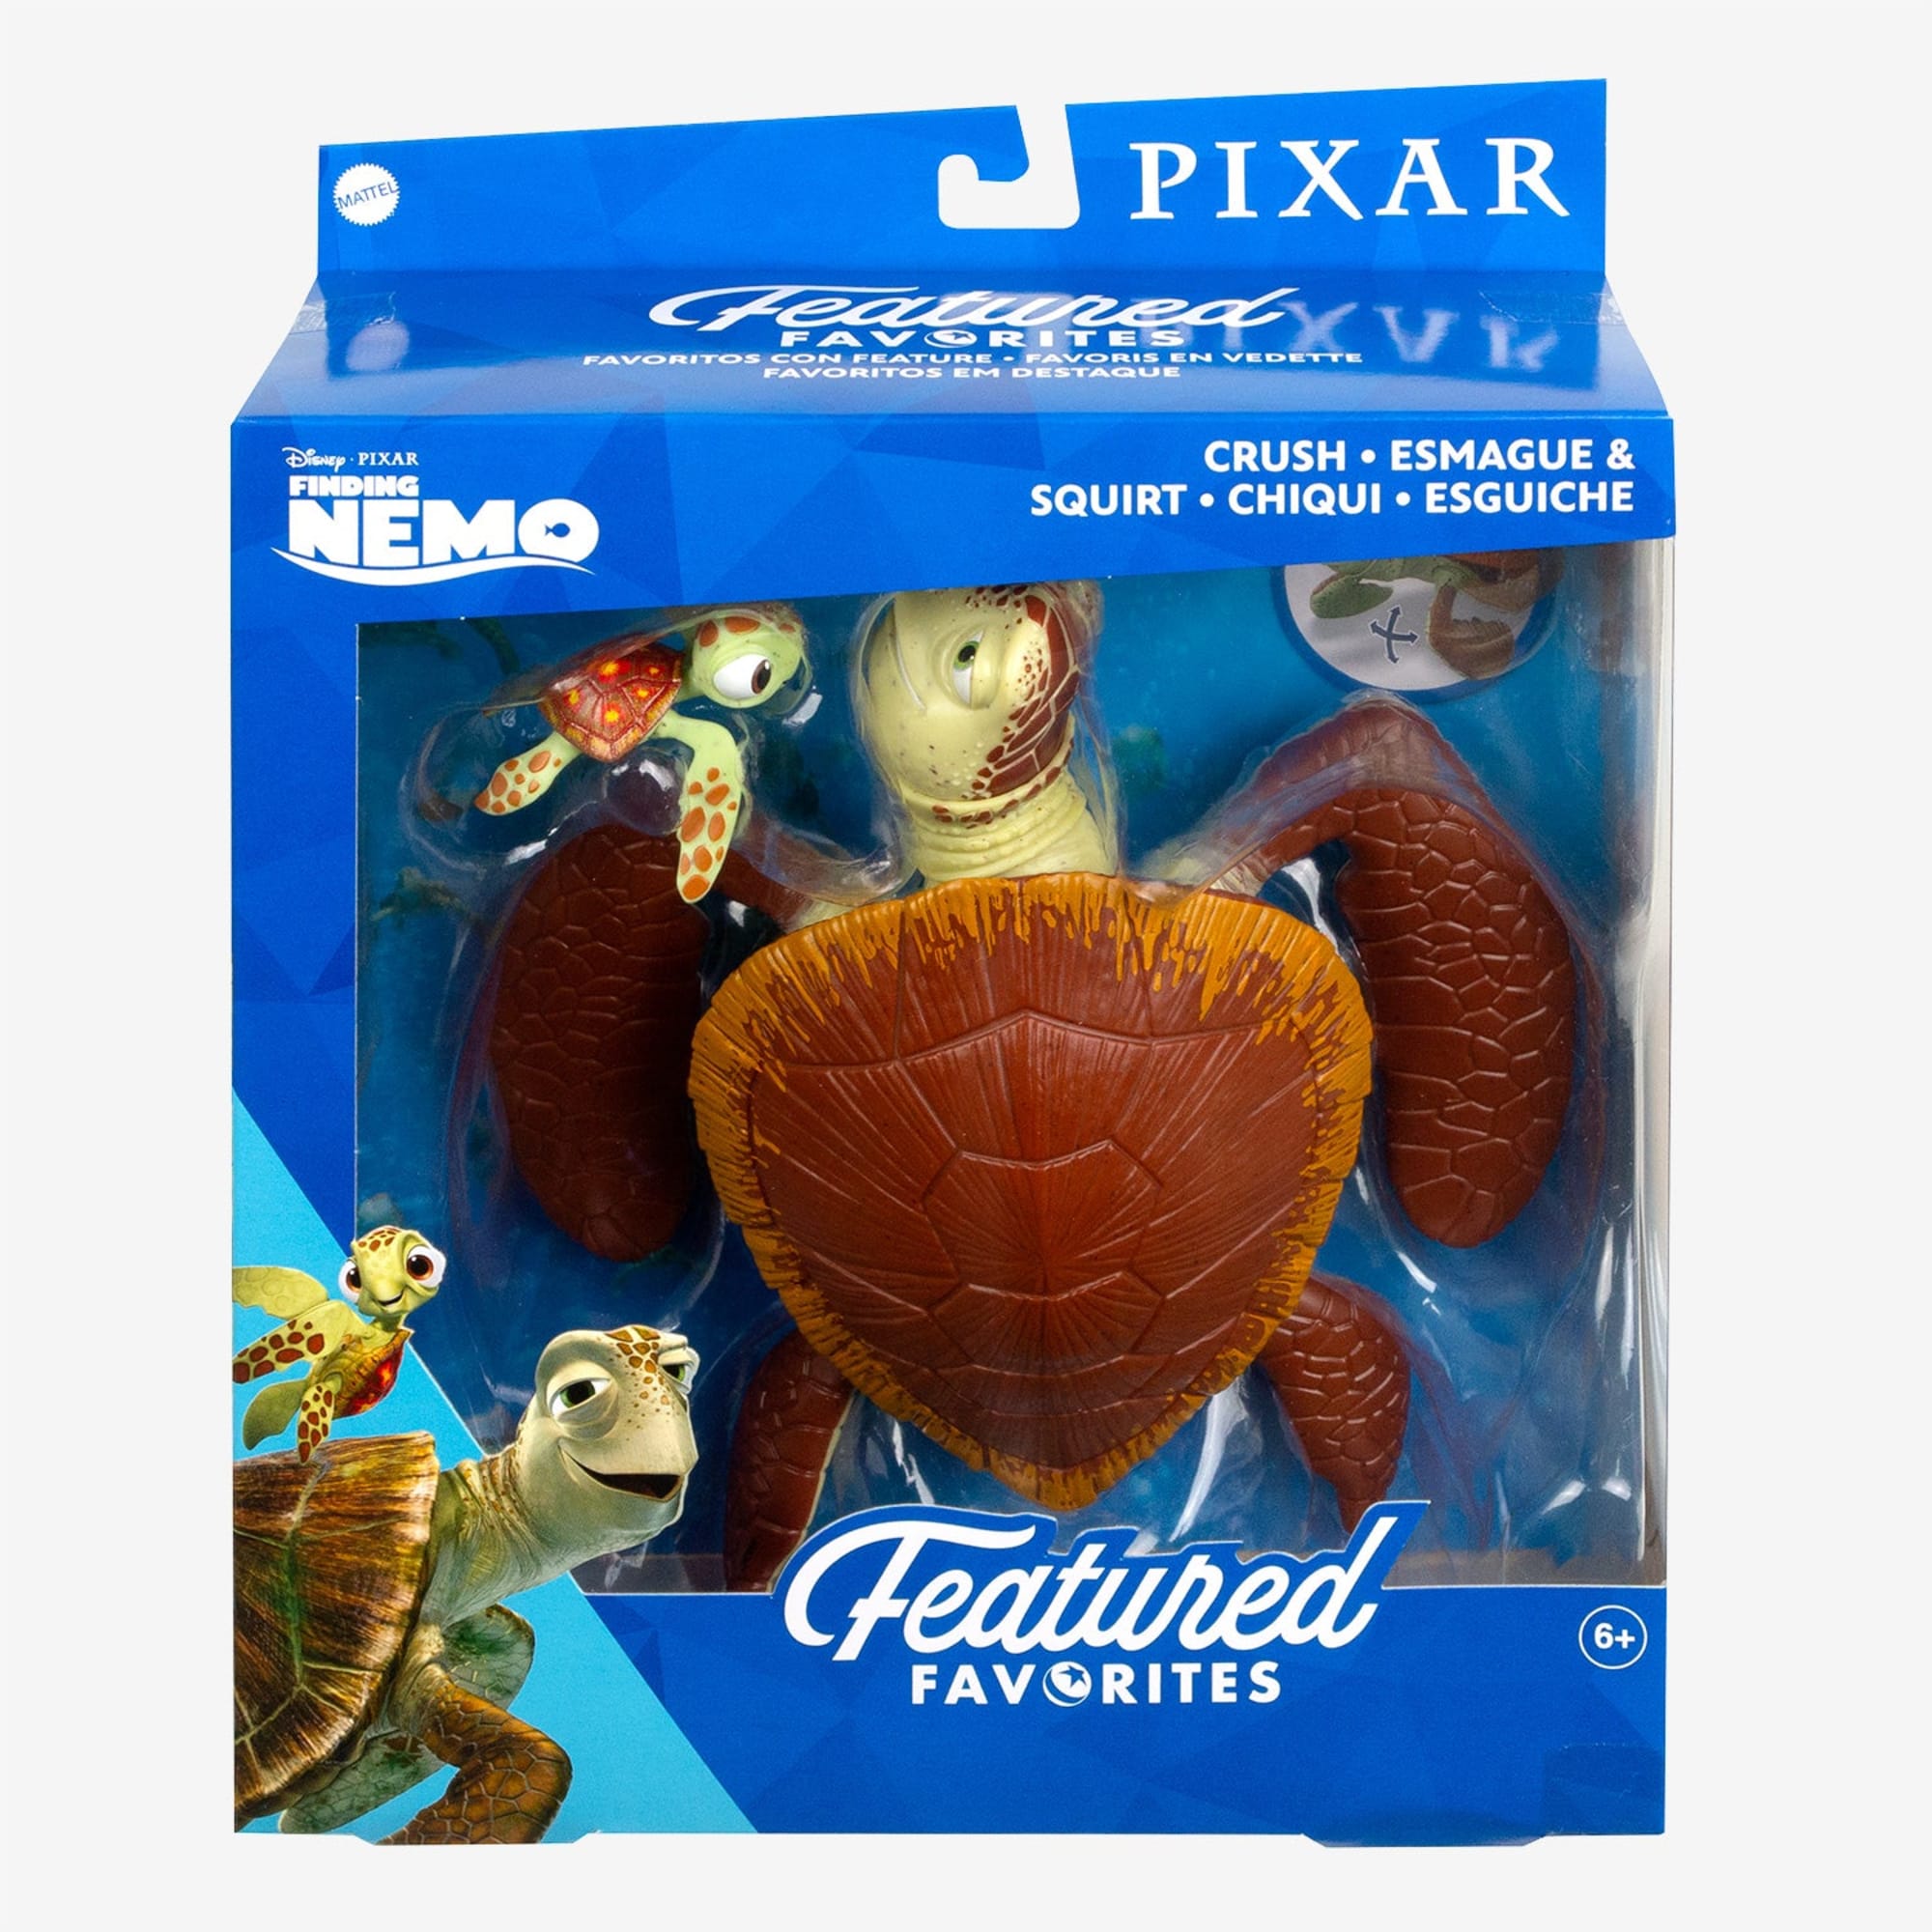 Pixar Featured Favorites Crush & Squirt Figures